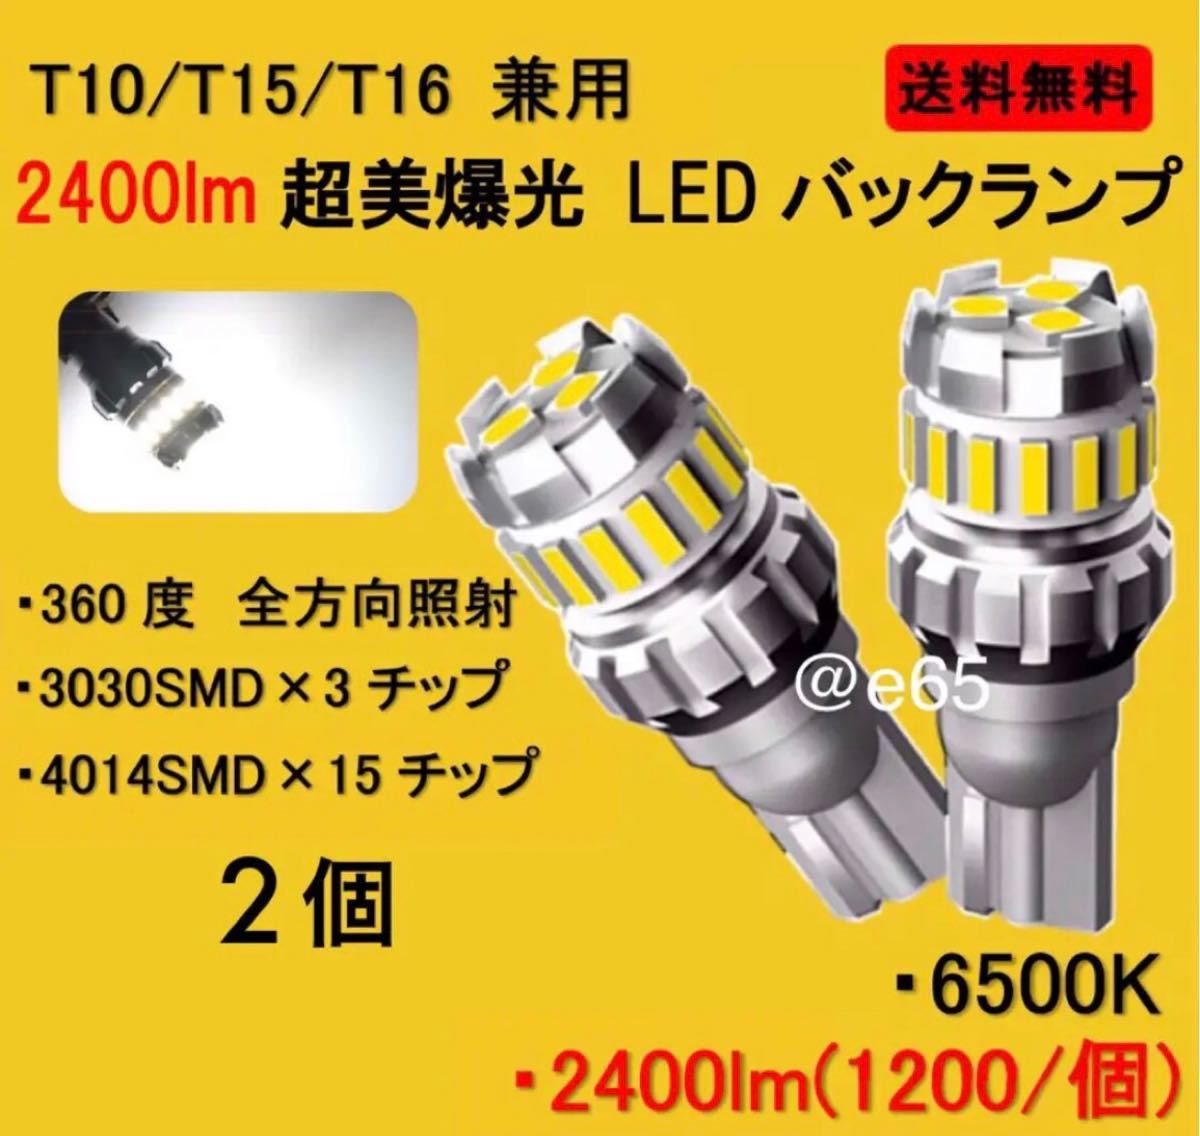 全国総量無料で 新型 超爆光 高性能 高耐久 T16 LED ポジション バックランプ a